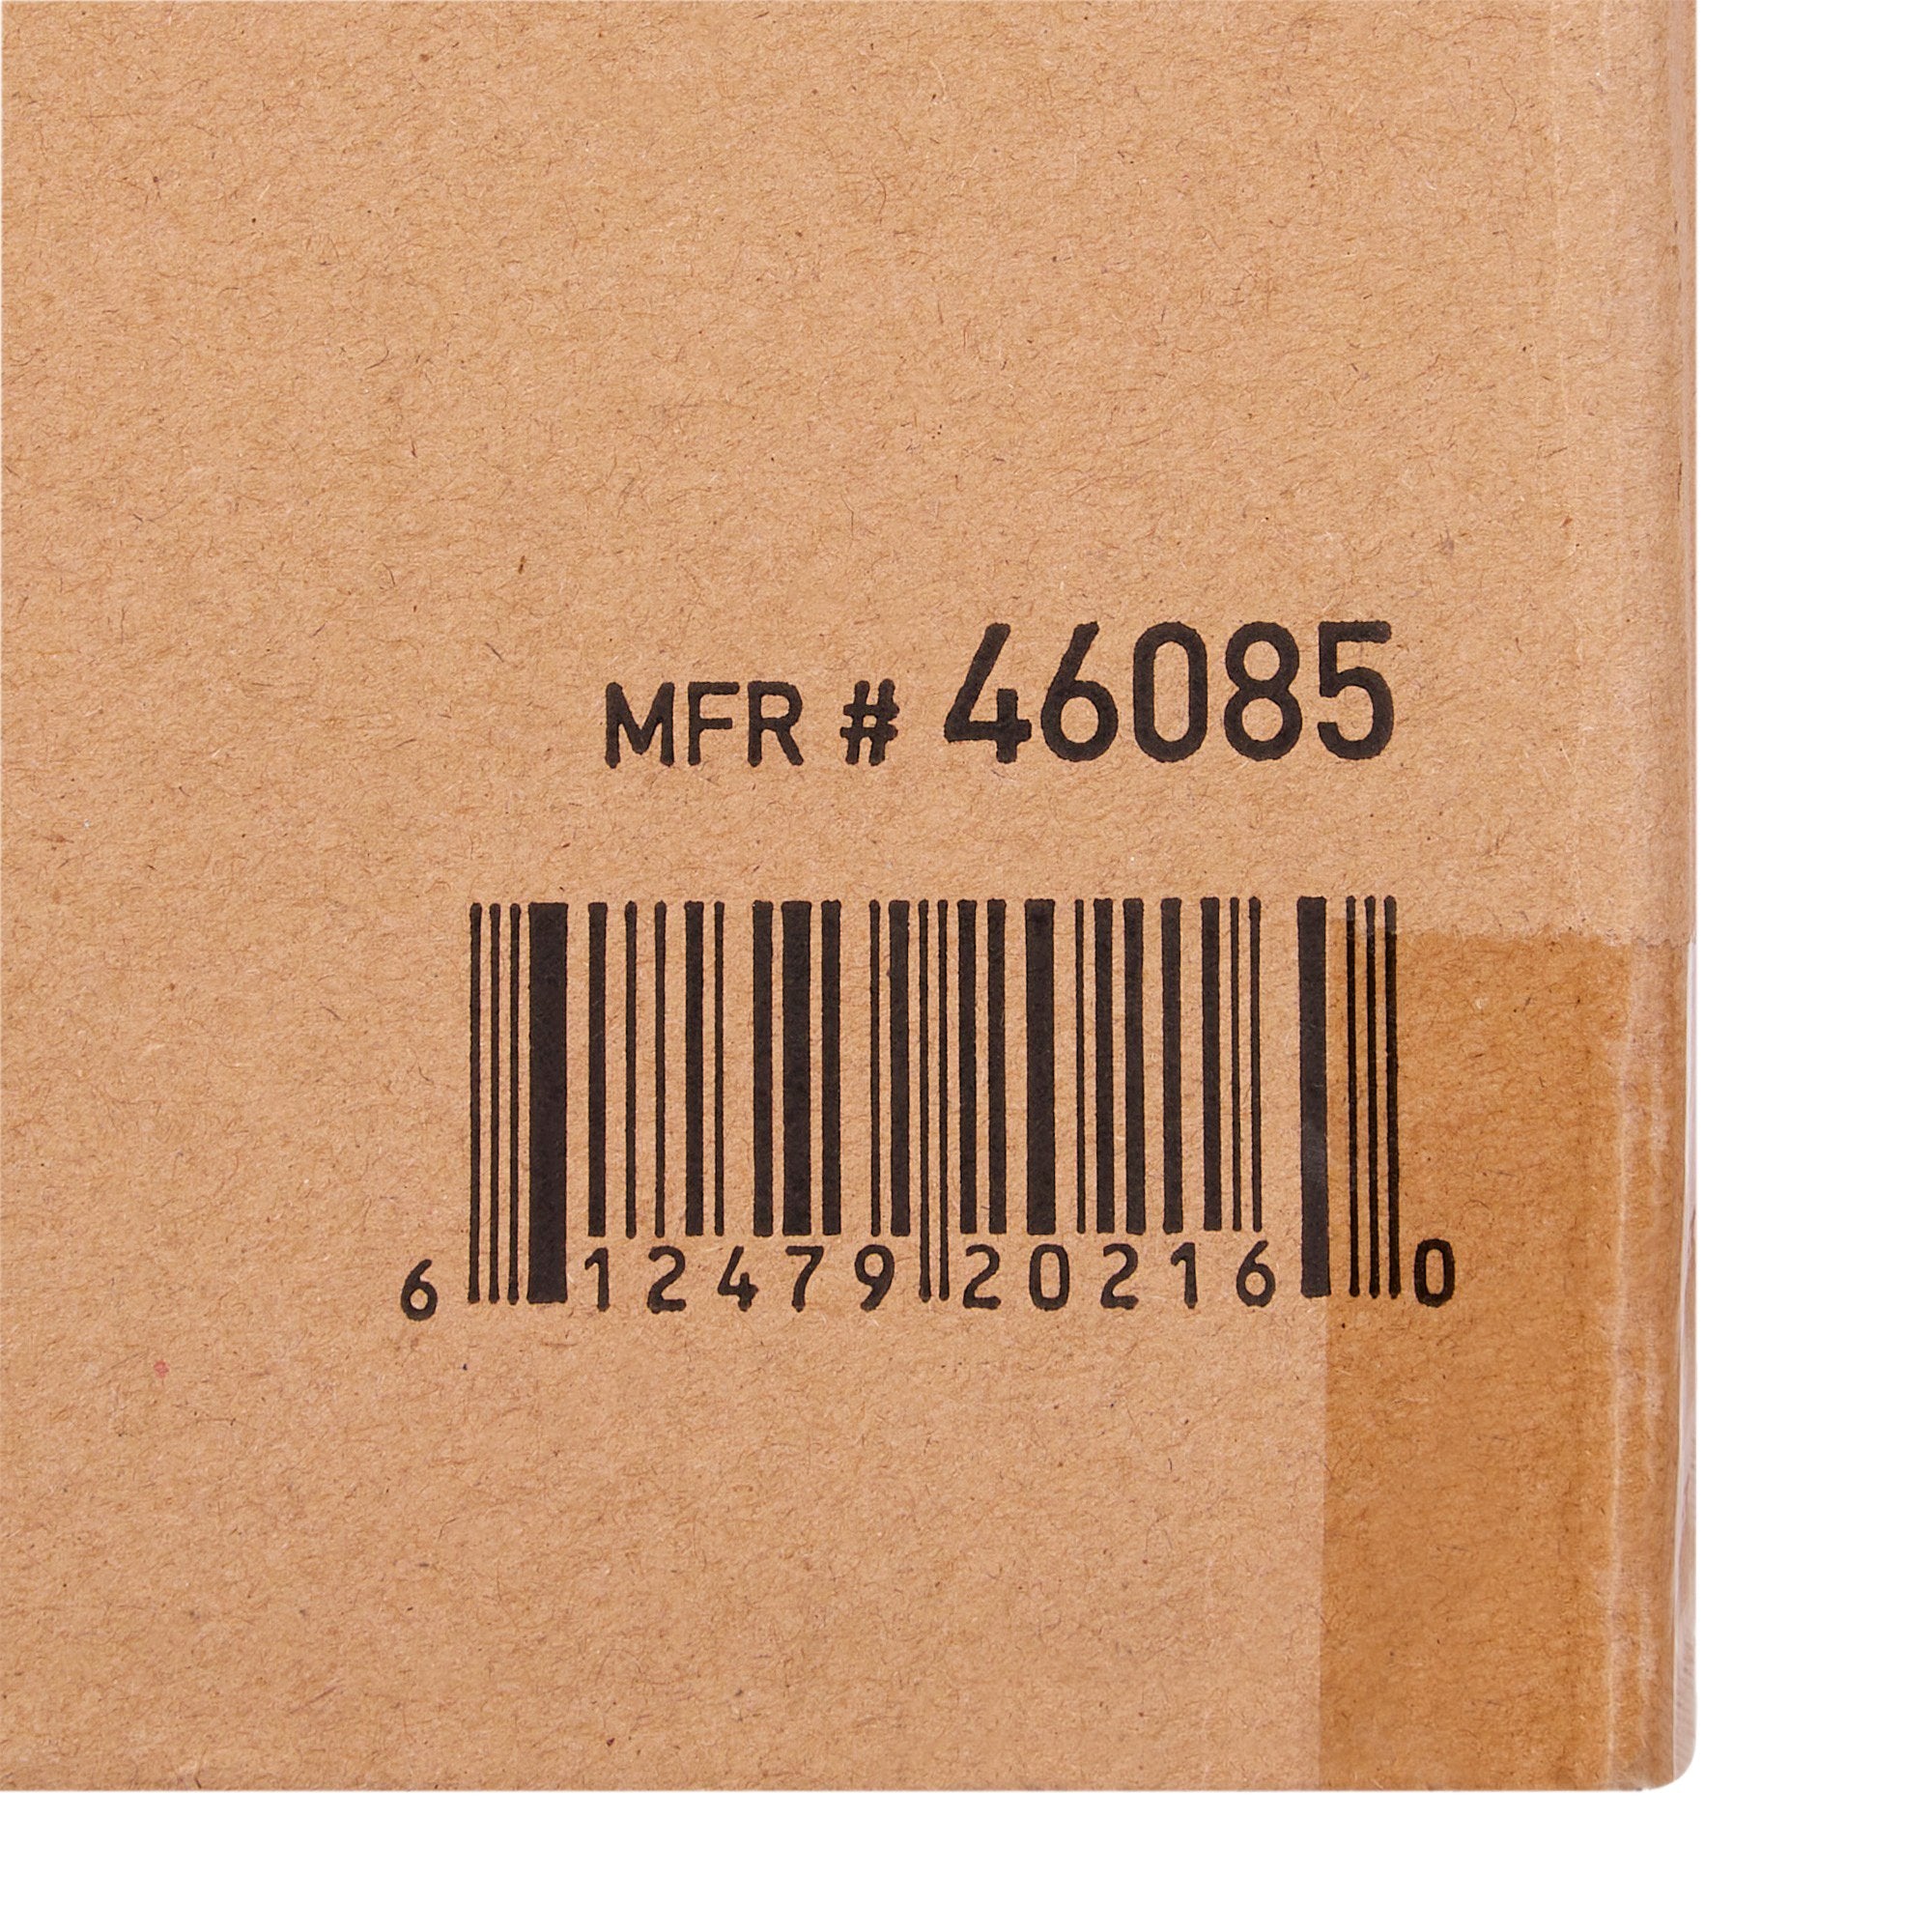 Task Wipe McKesson Medium Duty White NonSterile 9 X 12-1/2 Inch Disposable